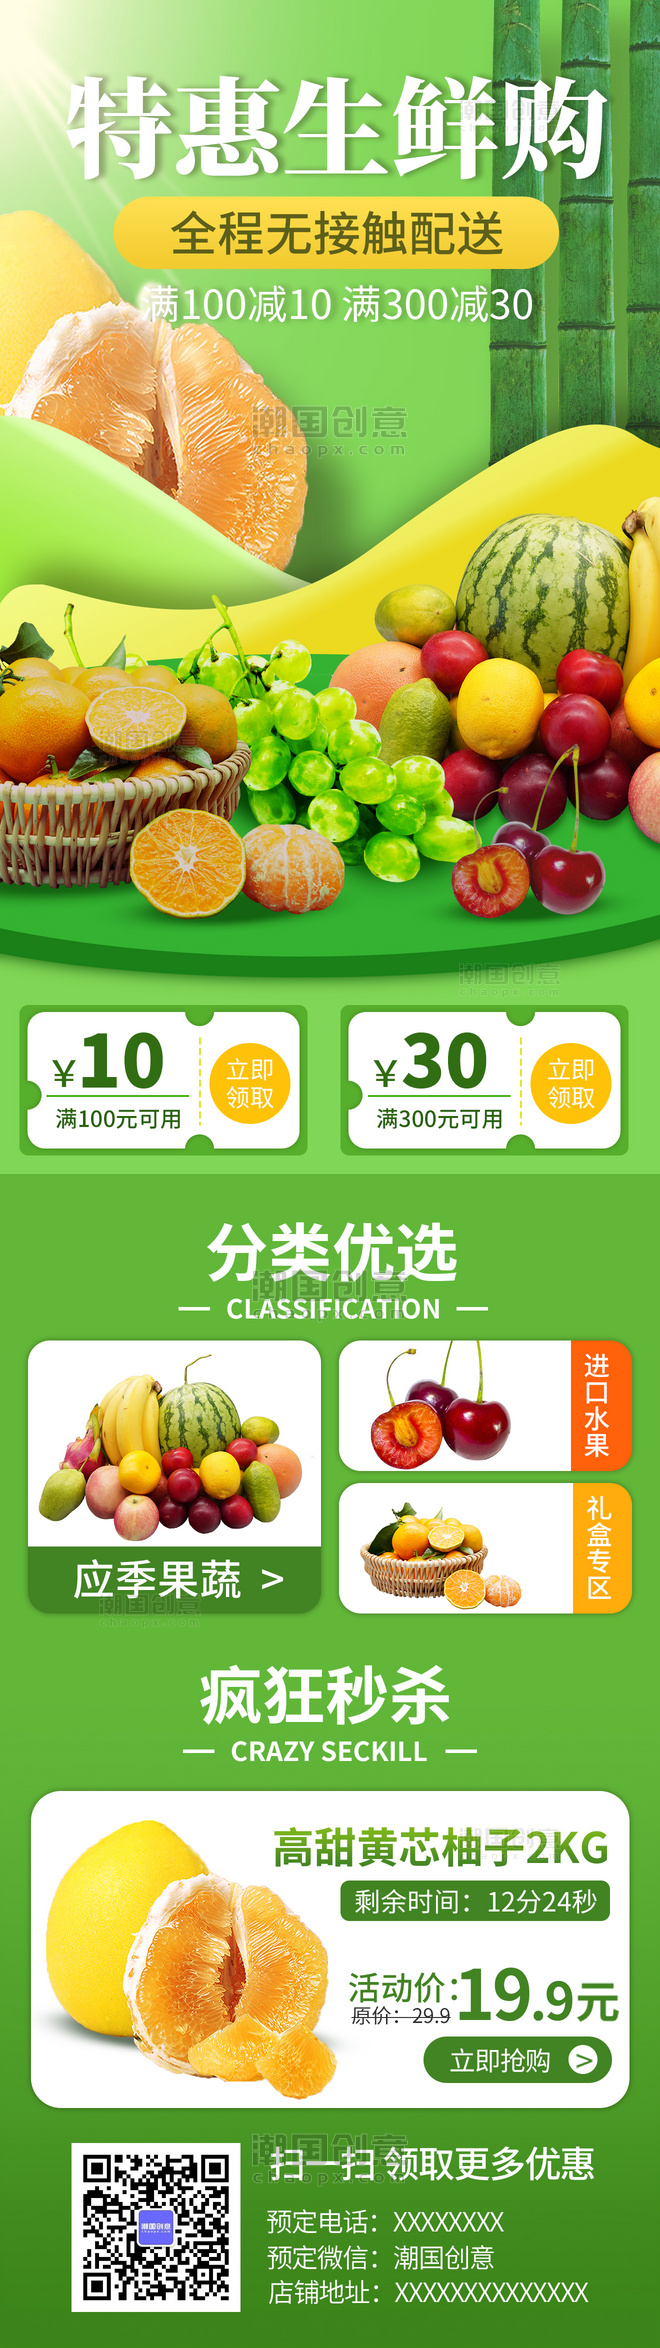 绿色生鲜水果外卖电商促销优惠活动渐变H5长图海报